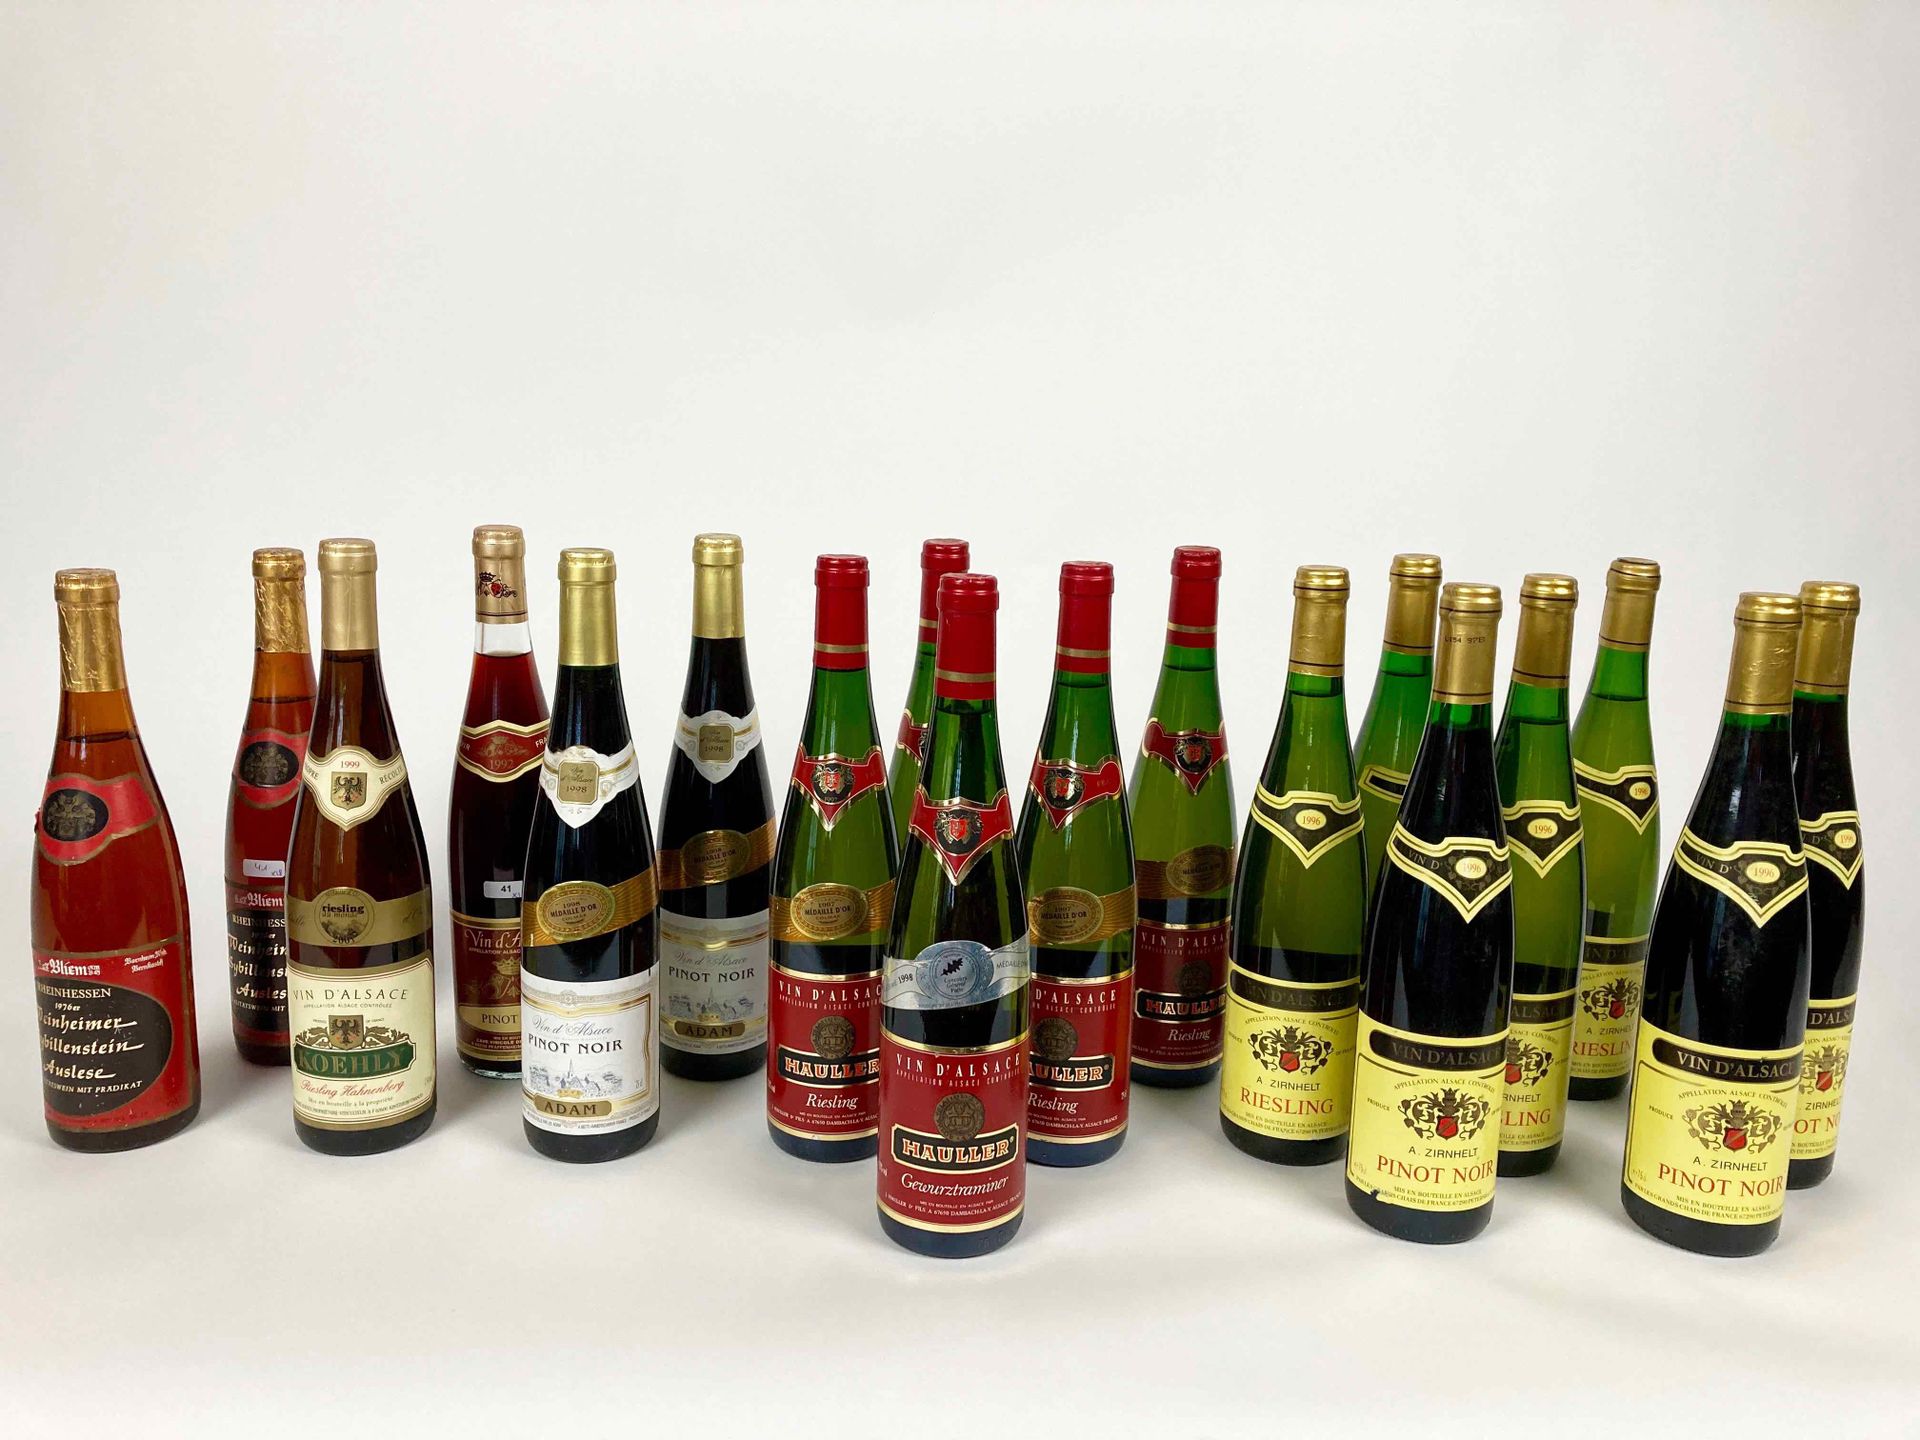 ALSACE Lote de dieciséis botellas:

- Cave vinicole de Pfaffenheim - Pinot noir &hellip;